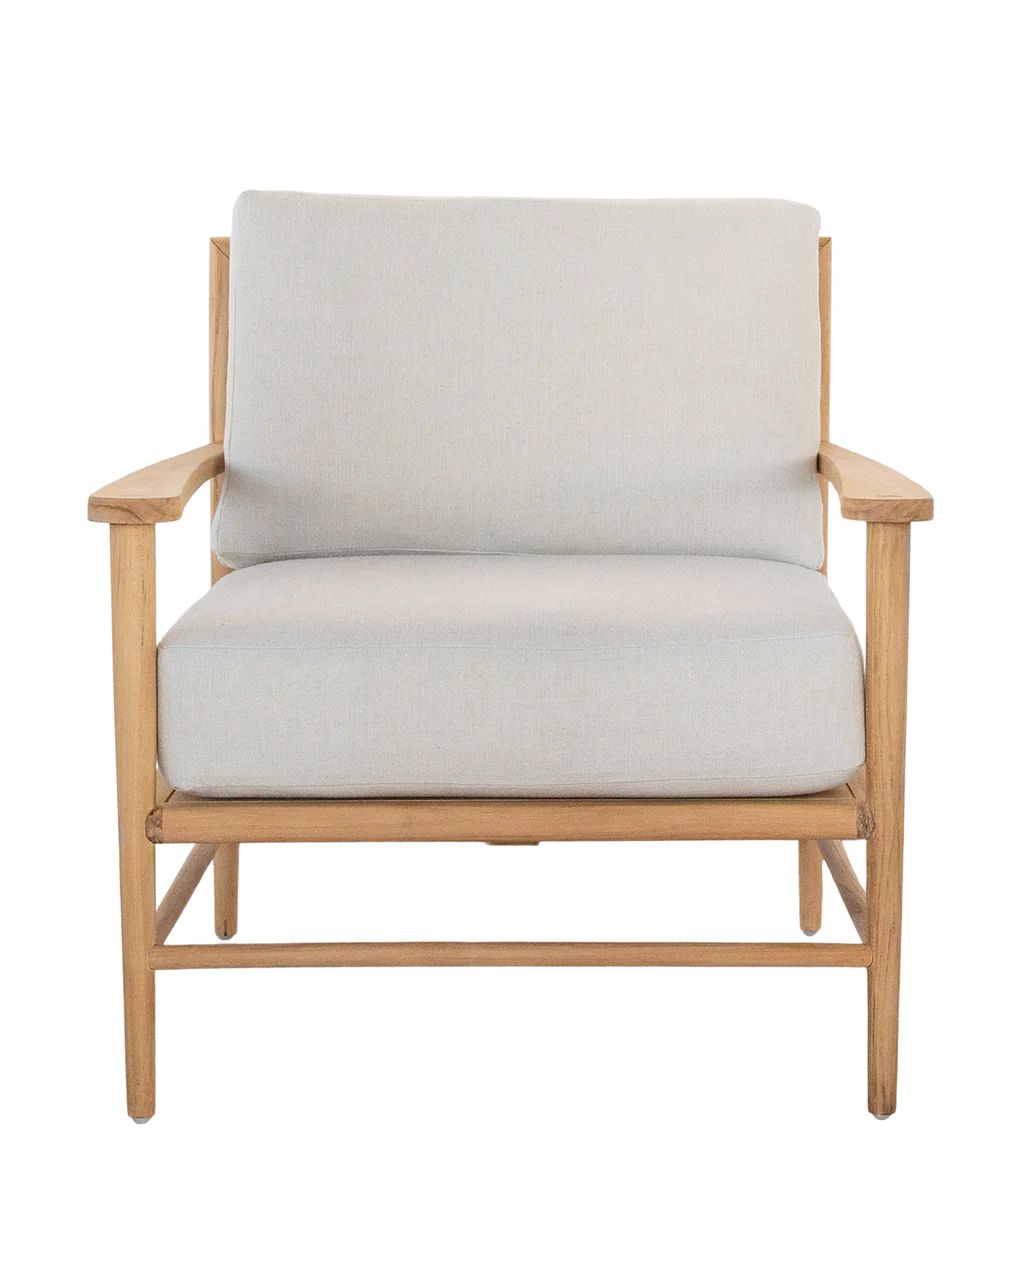 Beckett Chair | McGee & Co.